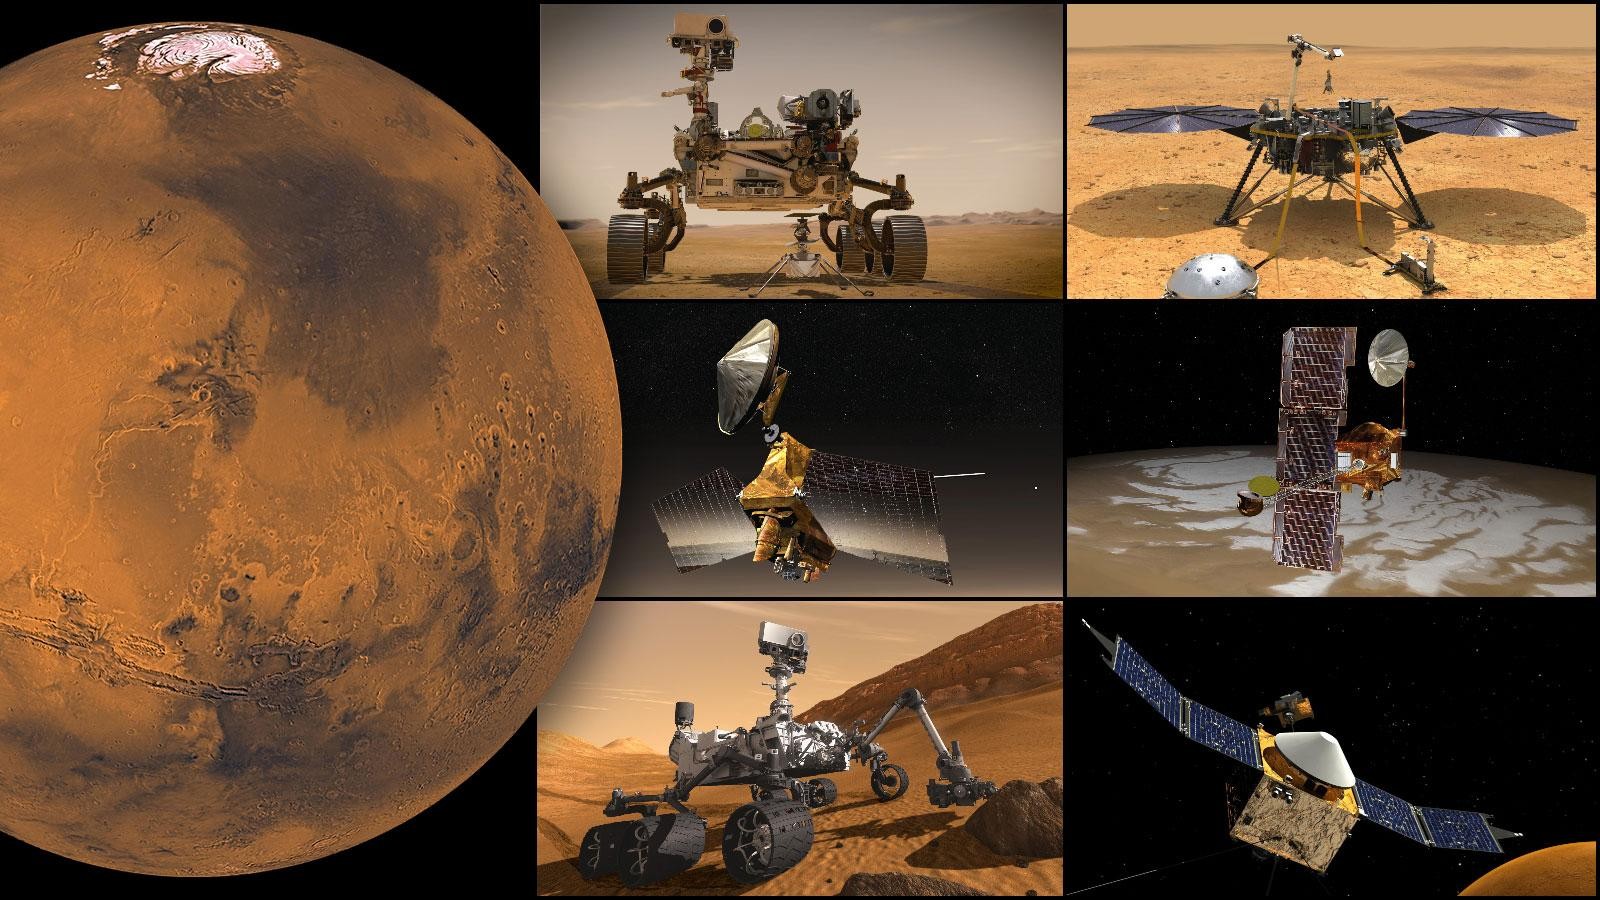 नासा के मंगल मिशन, ऊपर बाईं ओर से दक्षिणावर्त: दृढ़ता रोवर और इनजेनिटी मार्स हेलीकॉप्टर, इनसाइट लैंडर, ओडिसी ऑर्बिटर, मावेन ऑर्बिटर, क्यूरियोसिटी रोवर और मार्स रिकोनिसेंस ऑर्बिटर।  ये सभी अलग-अलग मशीनें/रोवर/उपग्रह हैं जिन्हें मंगल ग्रह पर भेजा गया है।